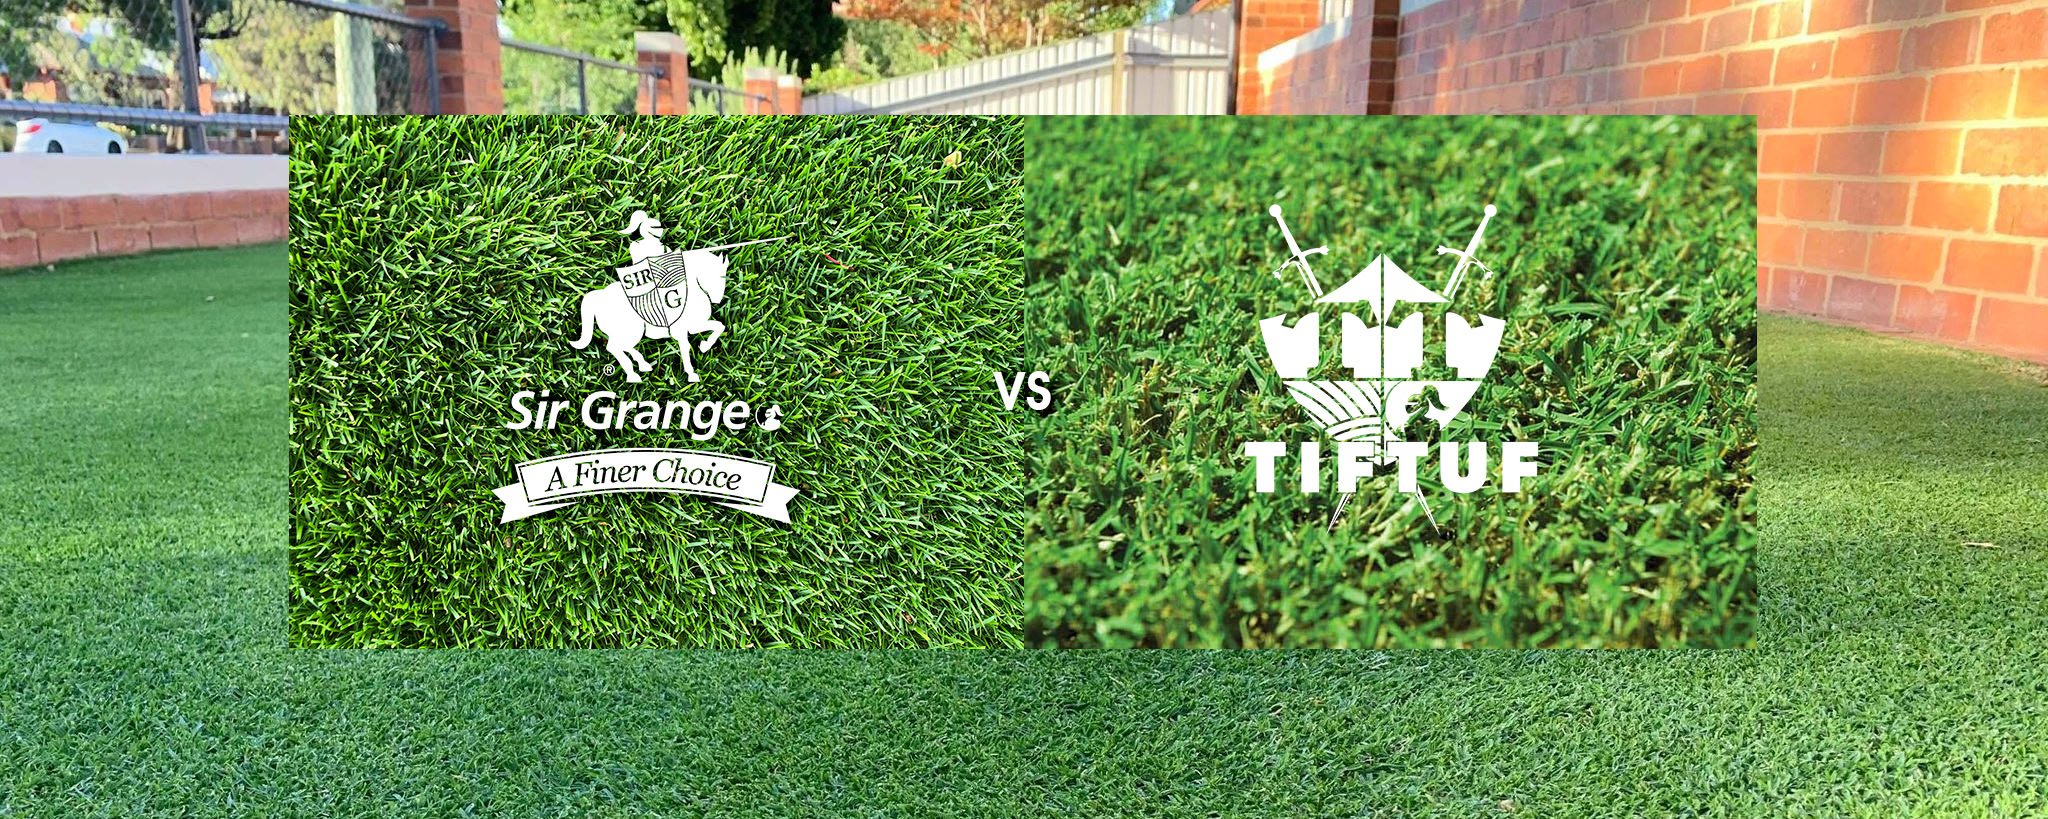 TifTuf vs. Sir Grange – Comparing Fine Leaf Turf Varieties